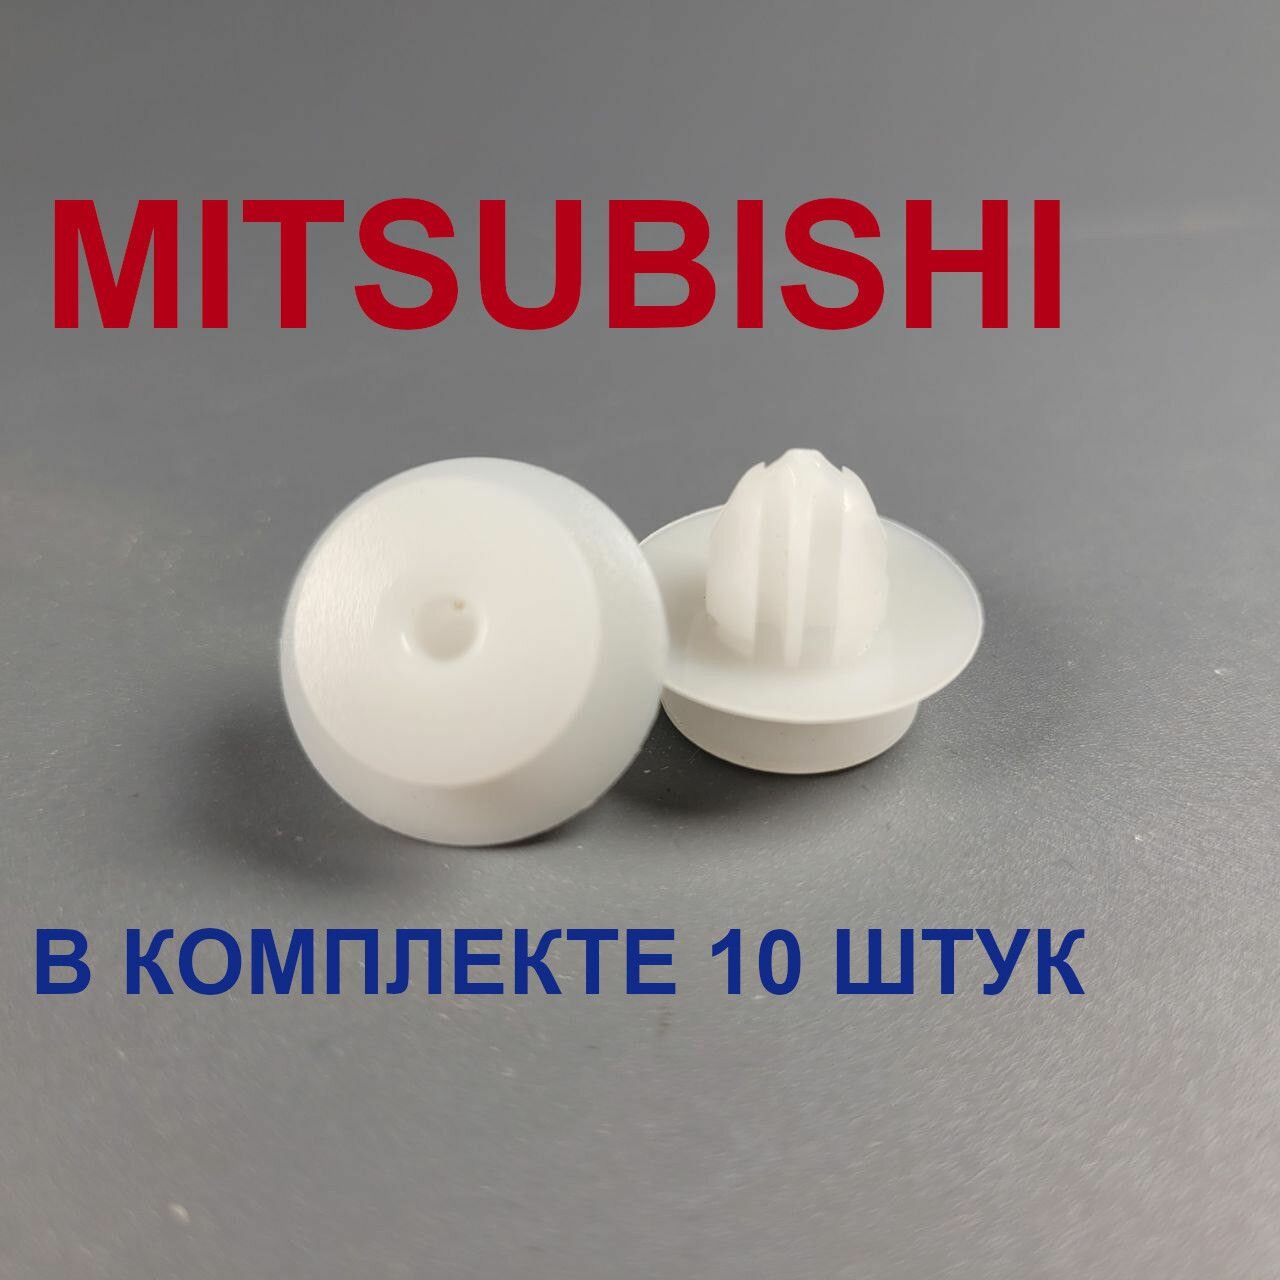 Клипсы(пистоны) для MITSUBISHI 10шт